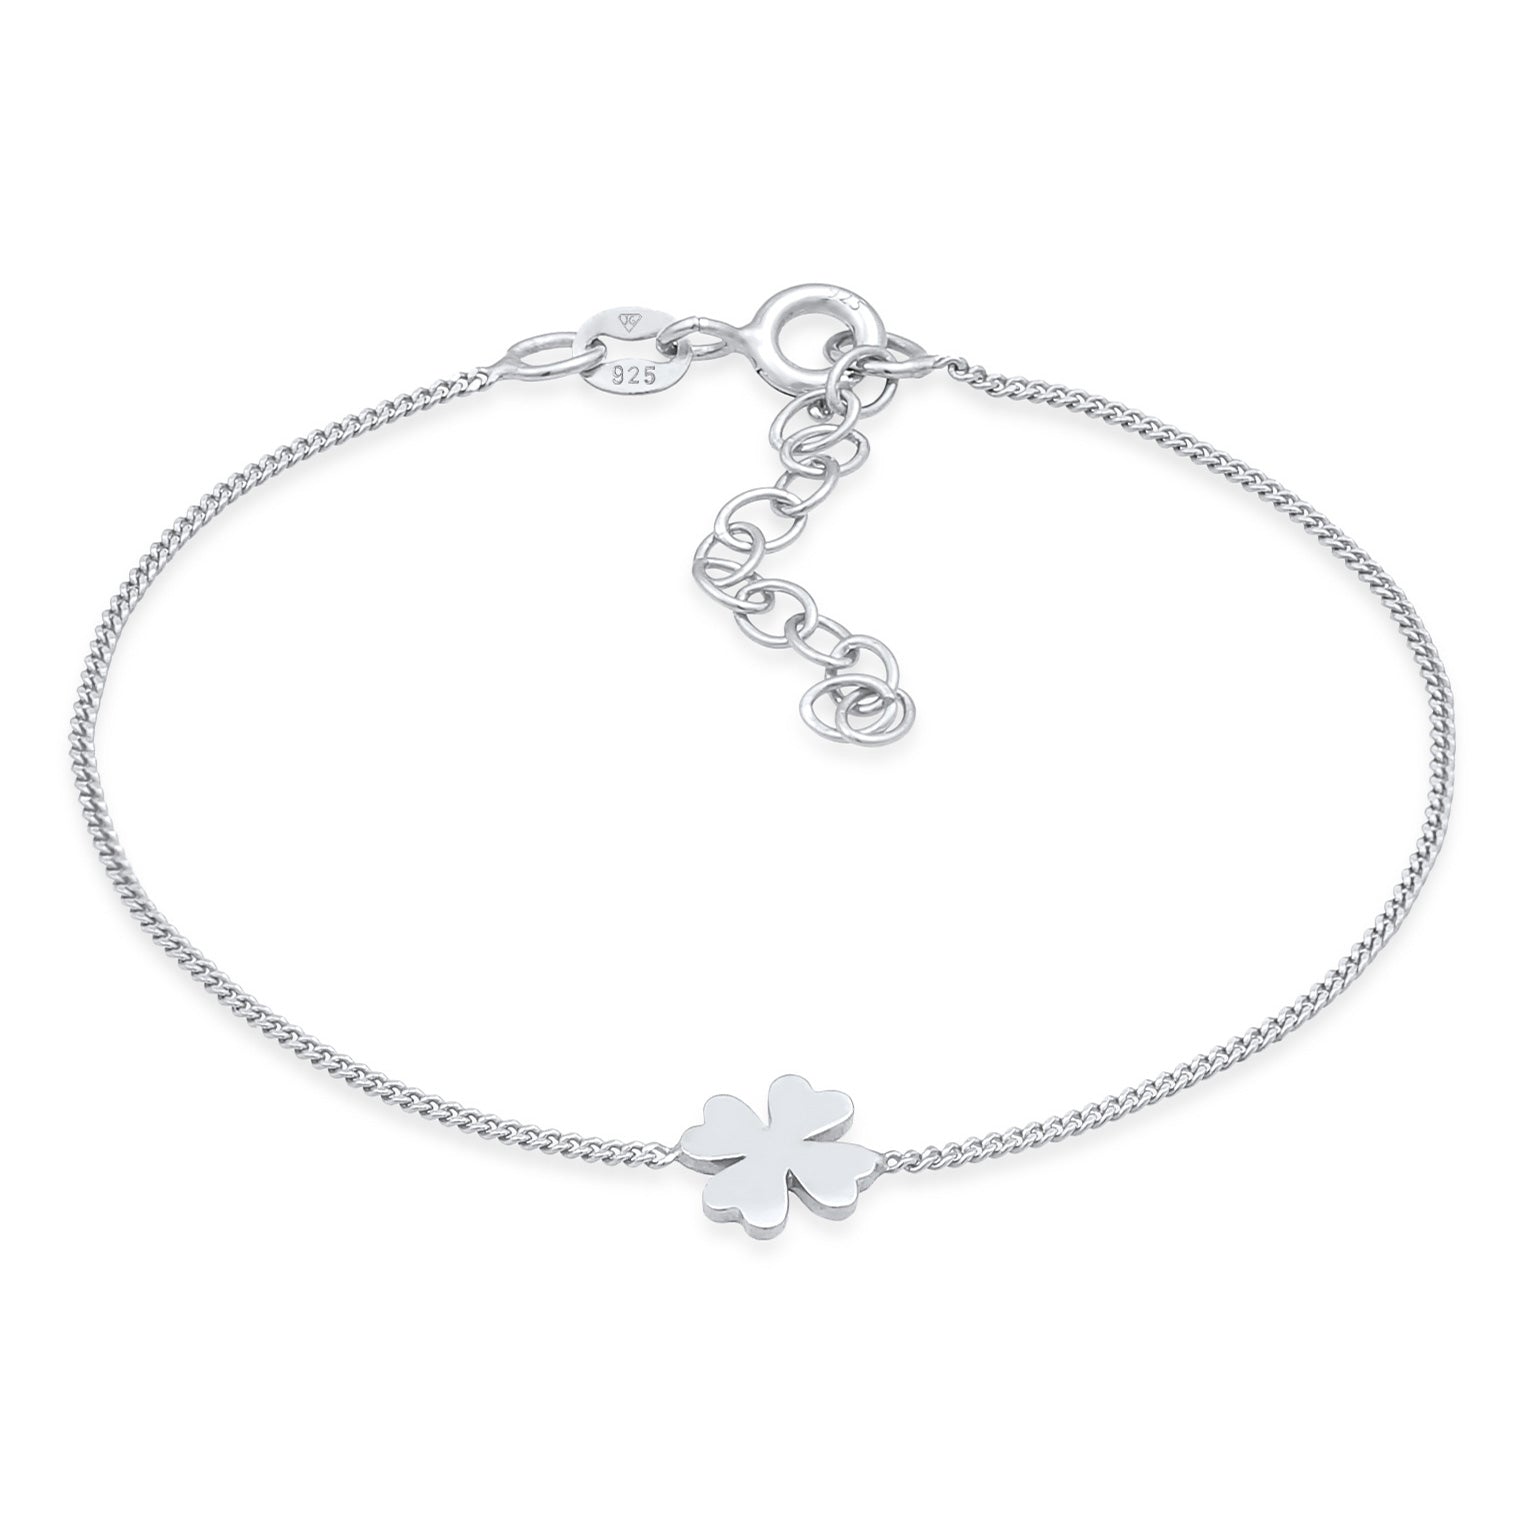 Buy bracelets in Elli – – Elli\'s Jewelry Page 3 online shop